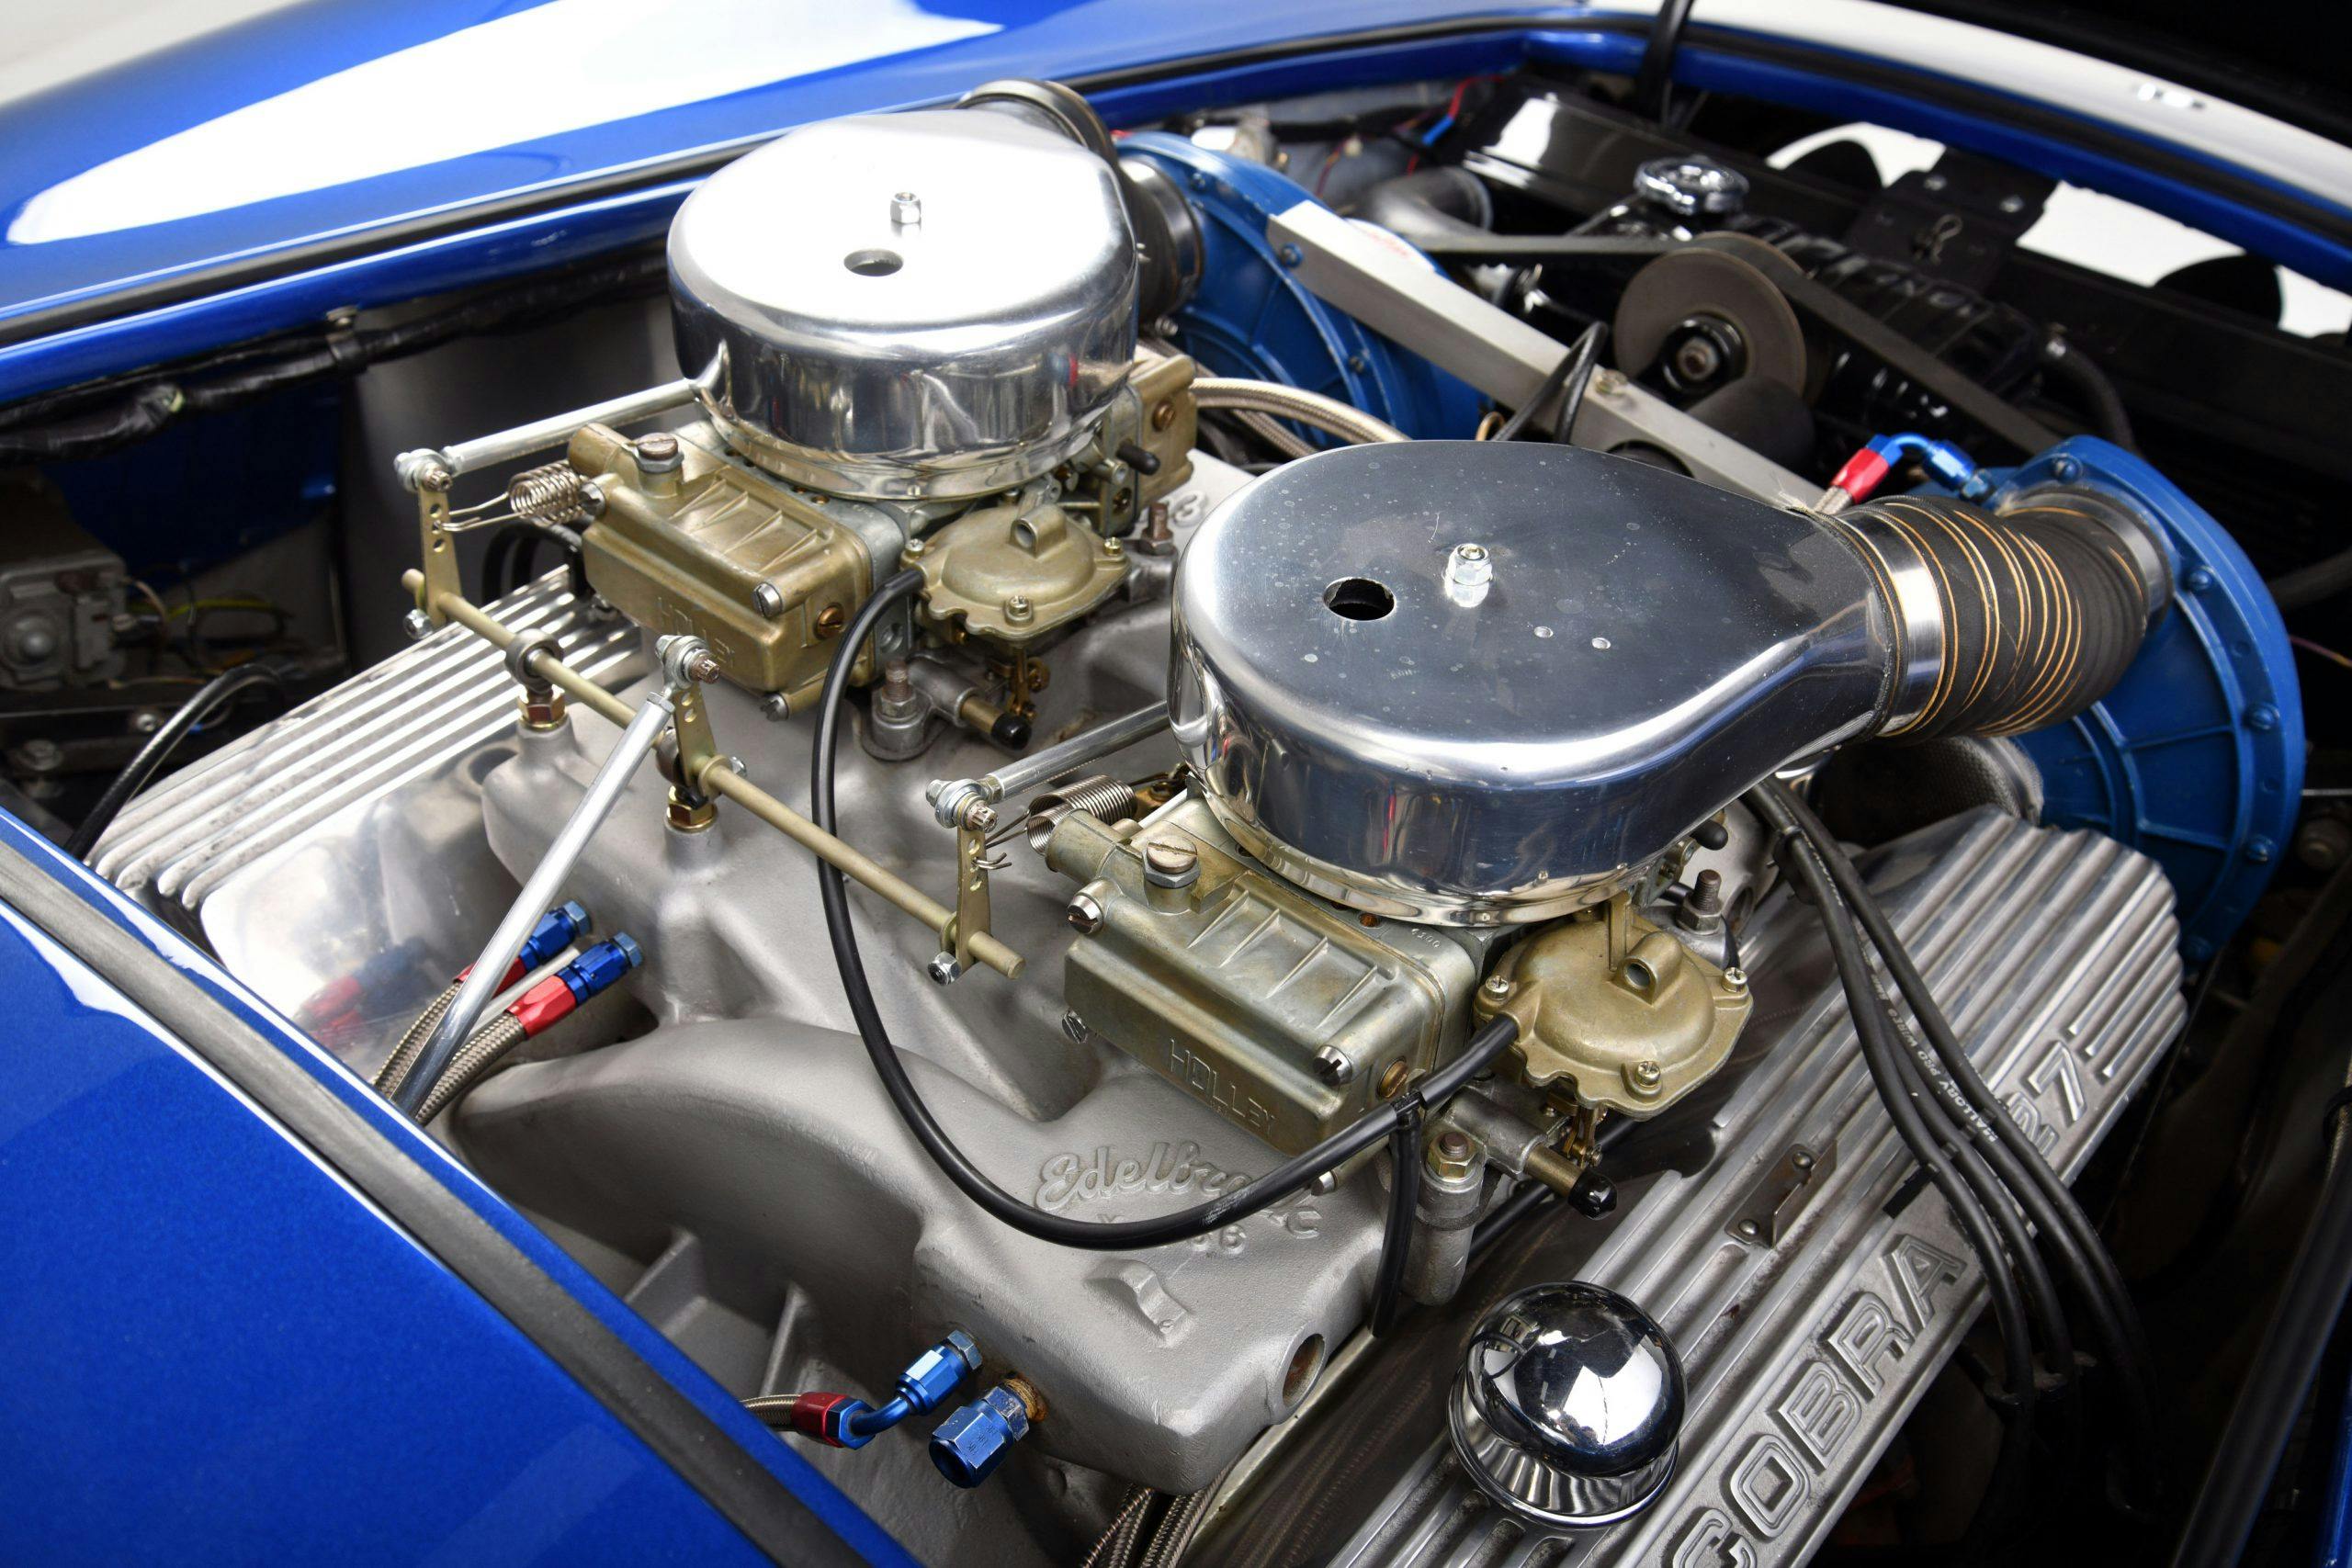 CSX 3015 Shelby Cobra engine